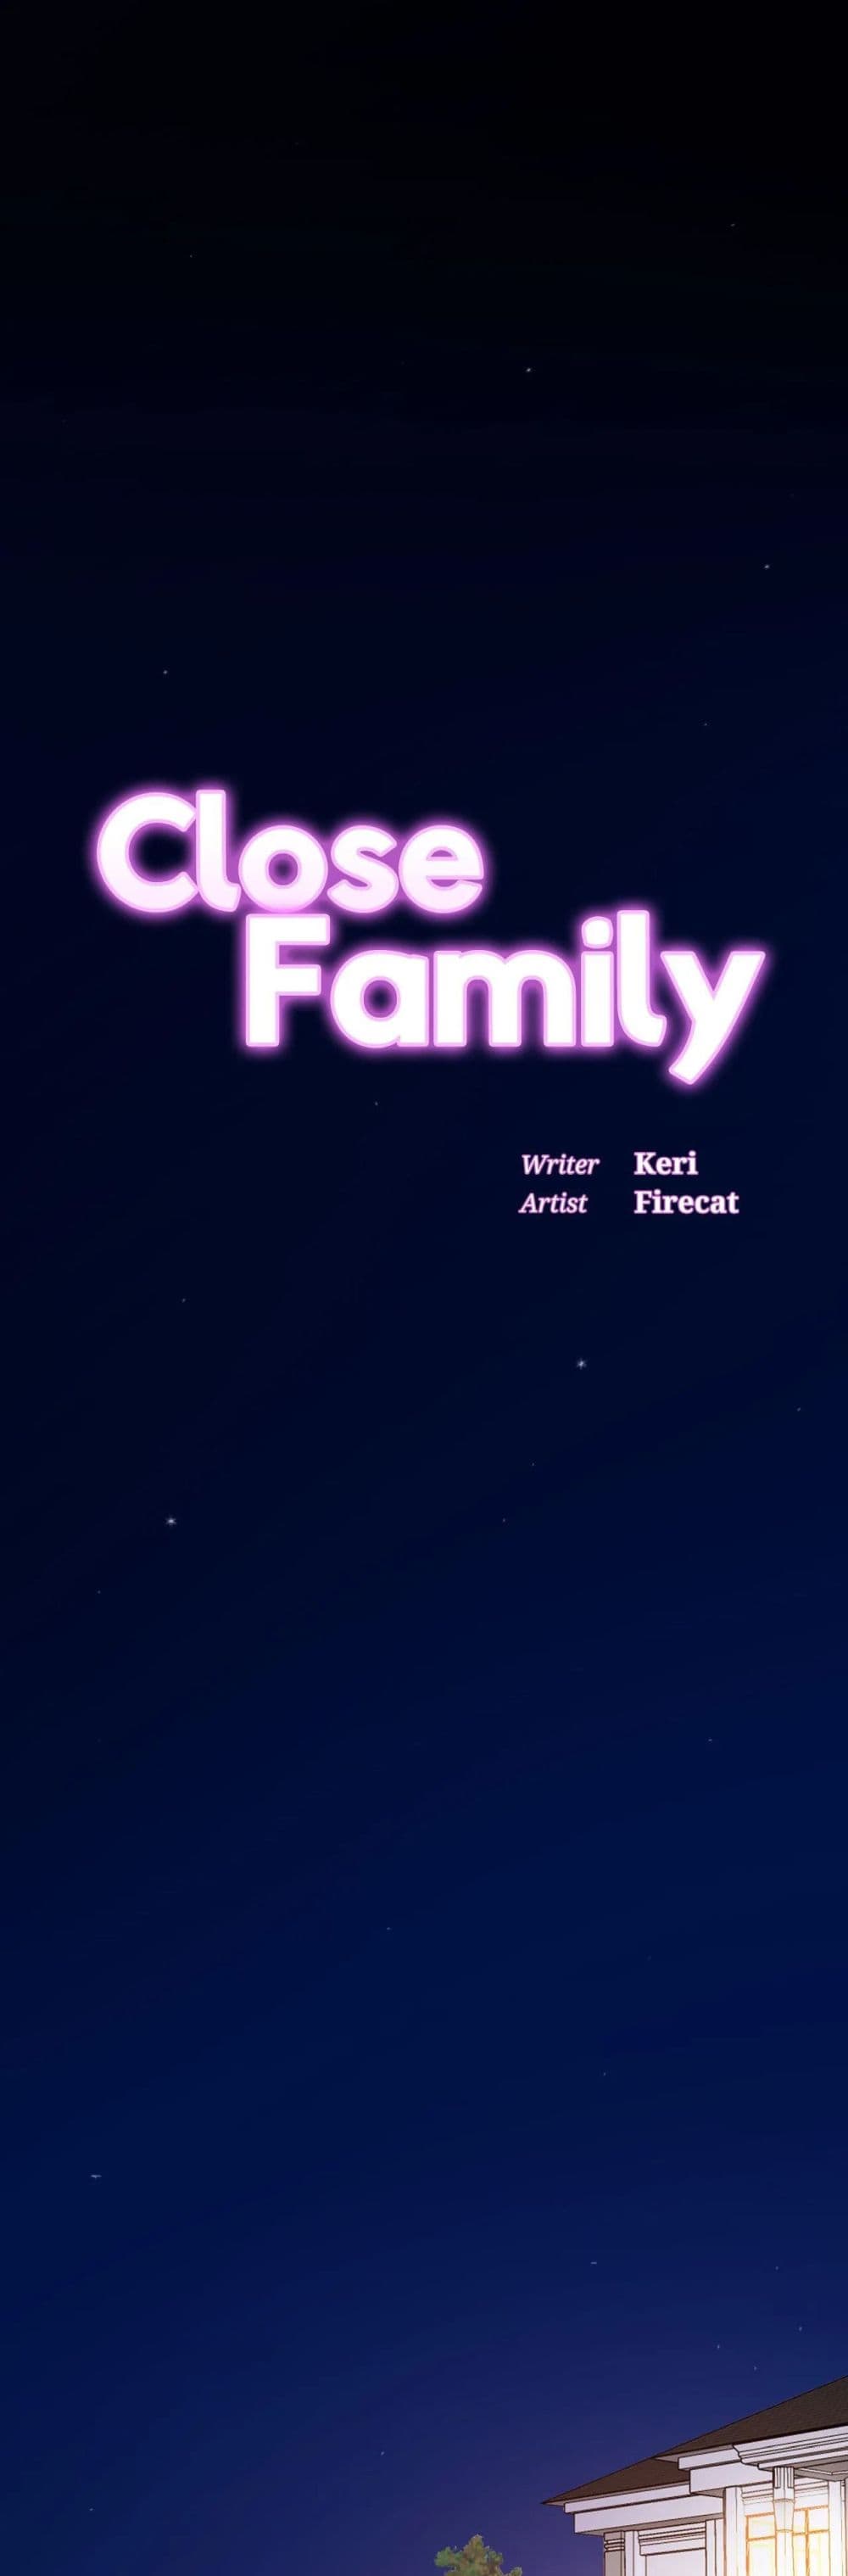 Close Family 58 (1)